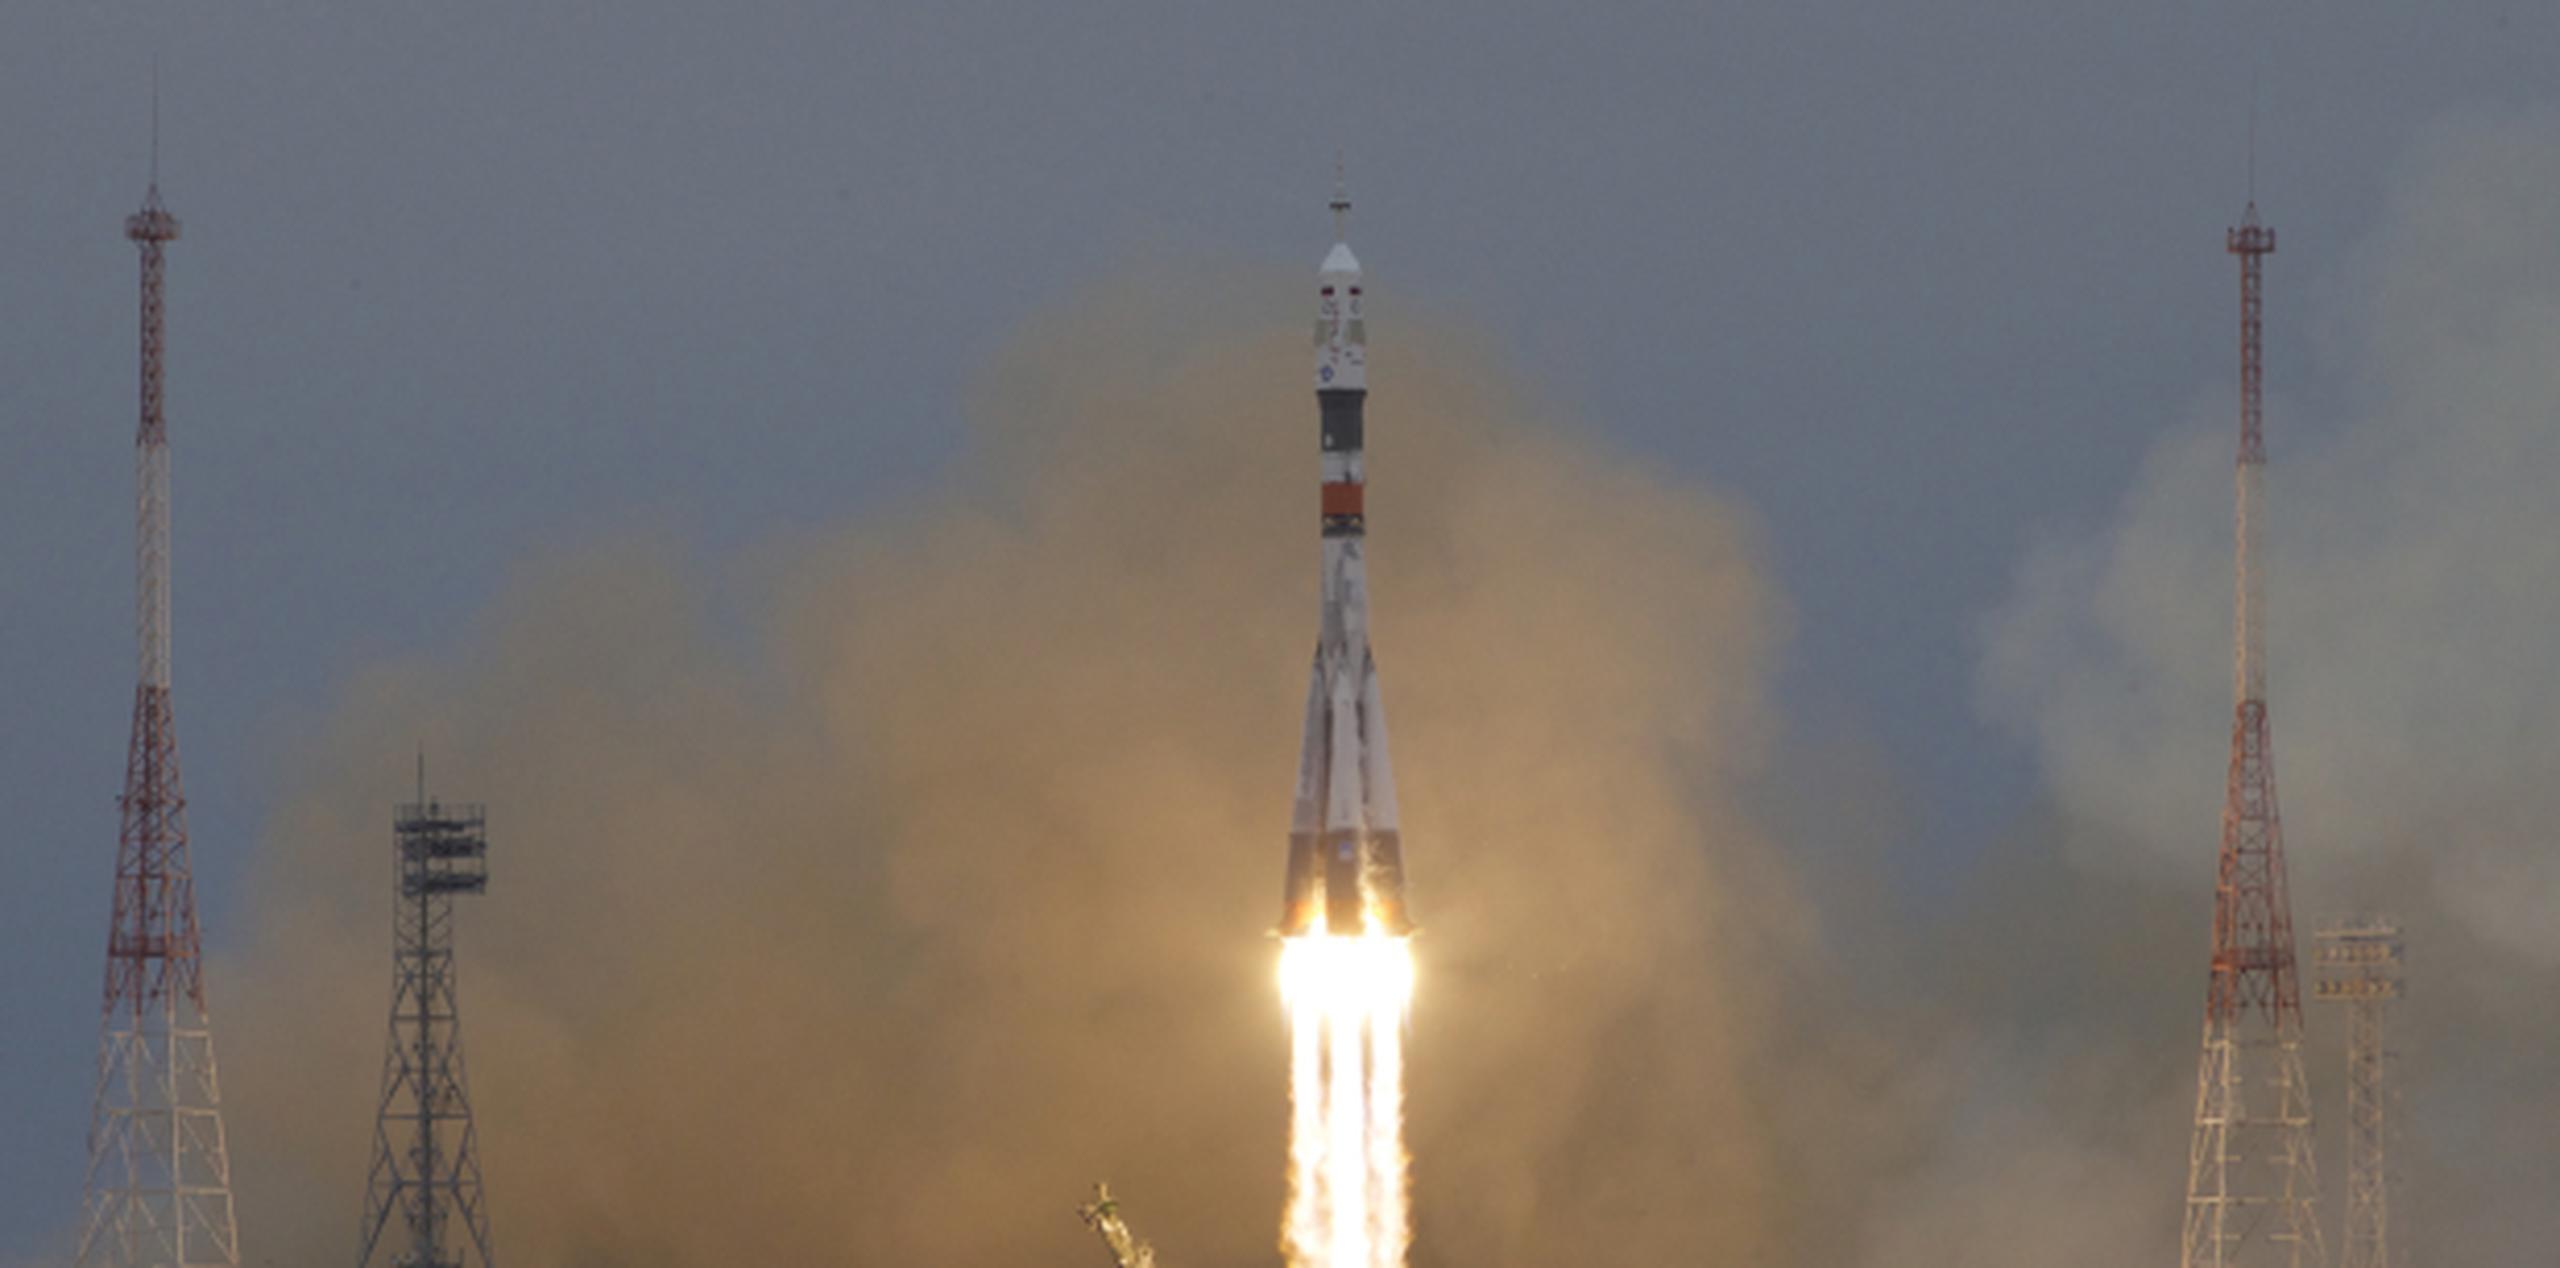 La nave espacial Soyuz MS-02 despegó el miércoles desde el cosmódromo de Baikonur, en Kazajistán. (AP/Ivan Sekretarev)
